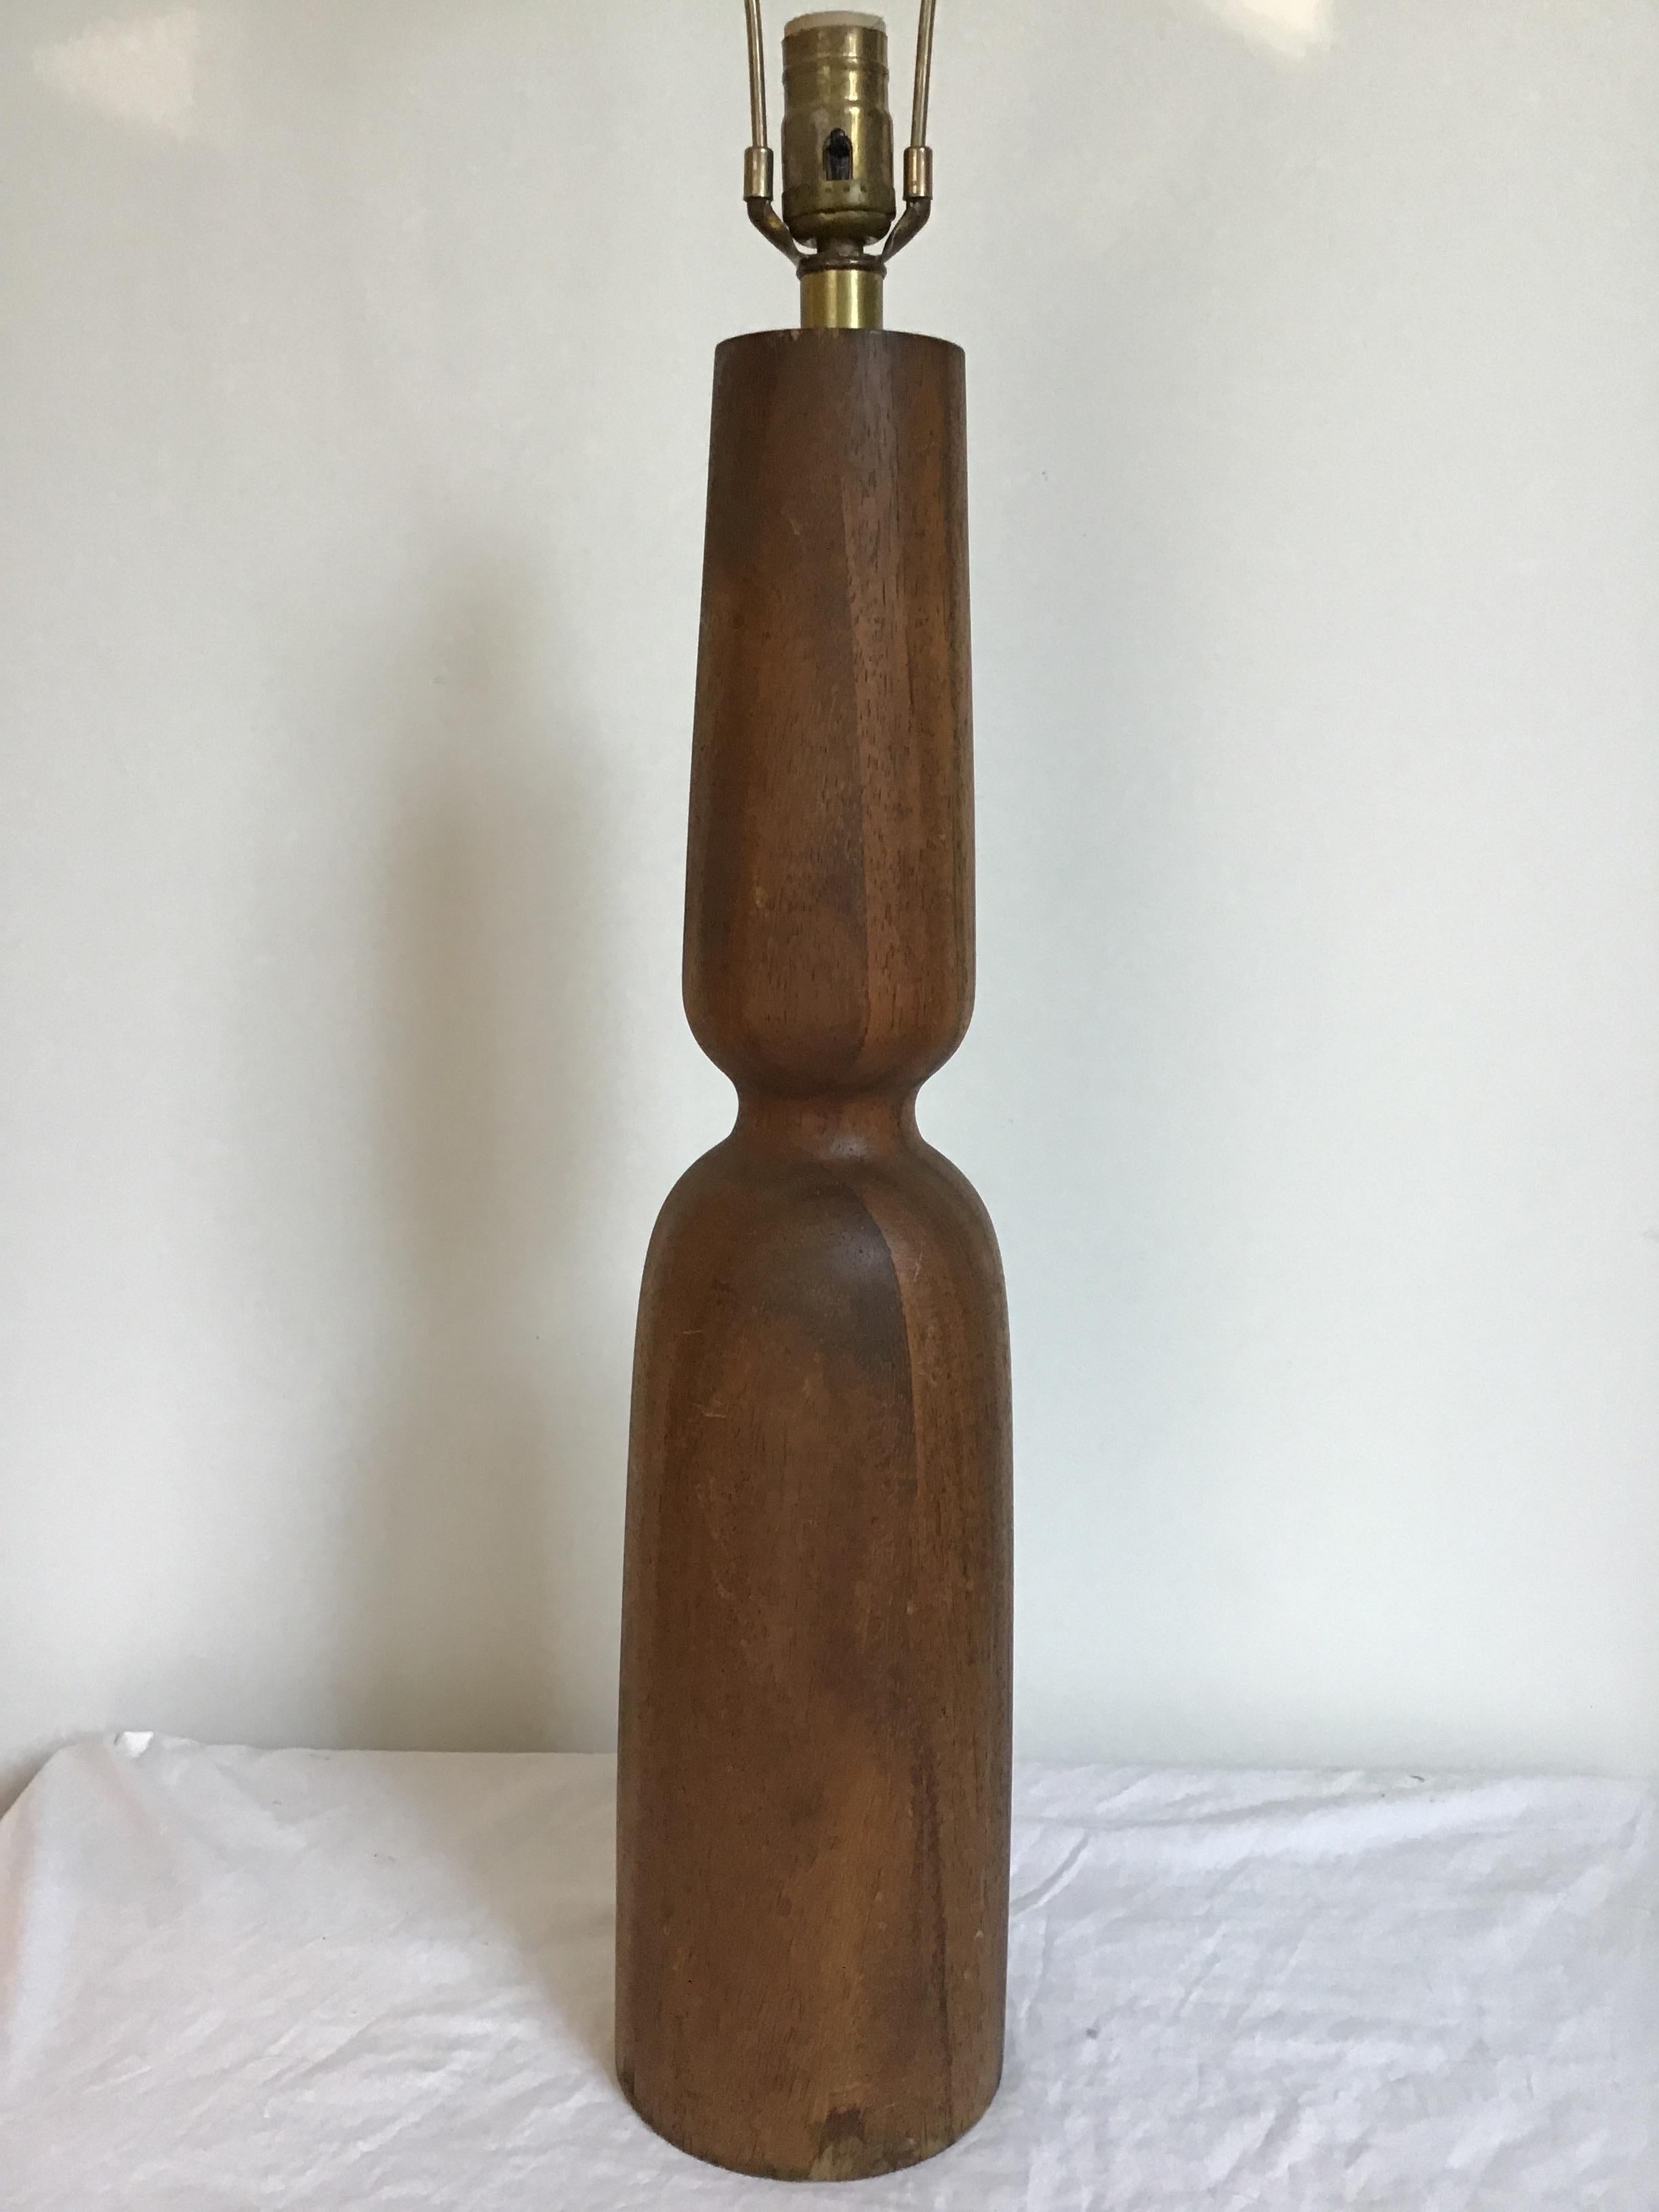 1960s Danish wood lamp. Wood finial.